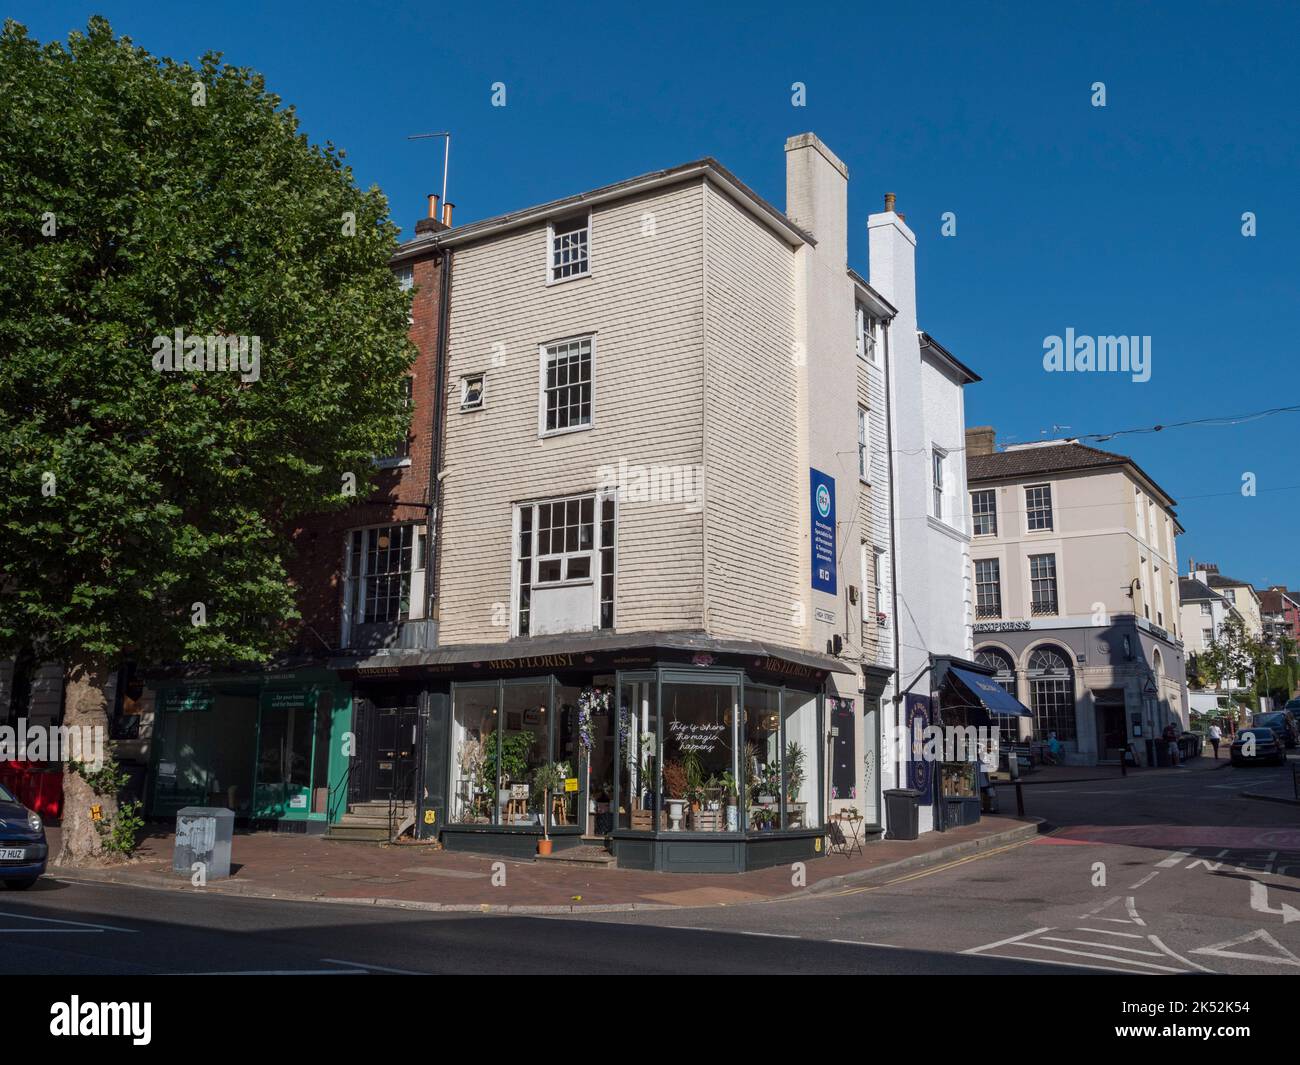 Vista generale dell'architettura (e della signora Florist) a Royal Tunbridge Wells, Kent, Regno Unito. Foto Stock